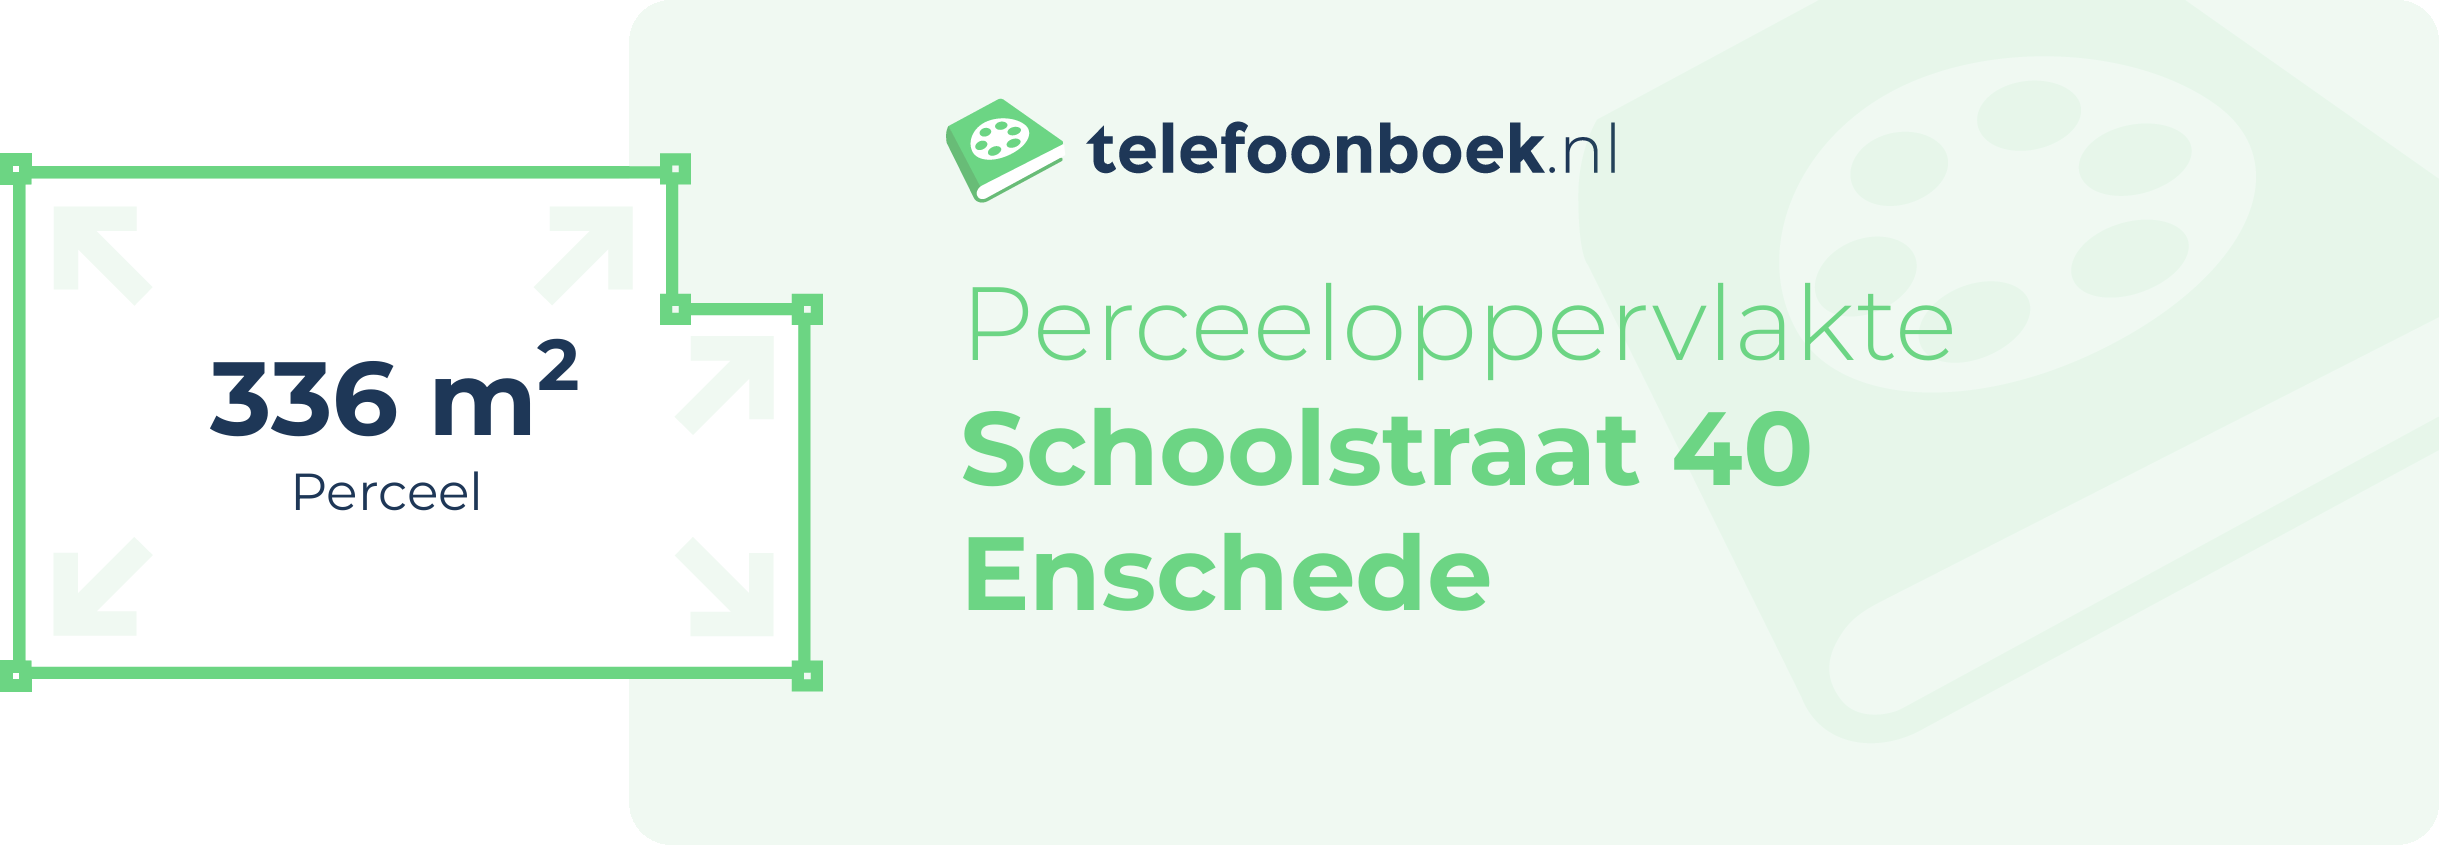 Perceeloppervlakte Schoolstraat 40 Enschede